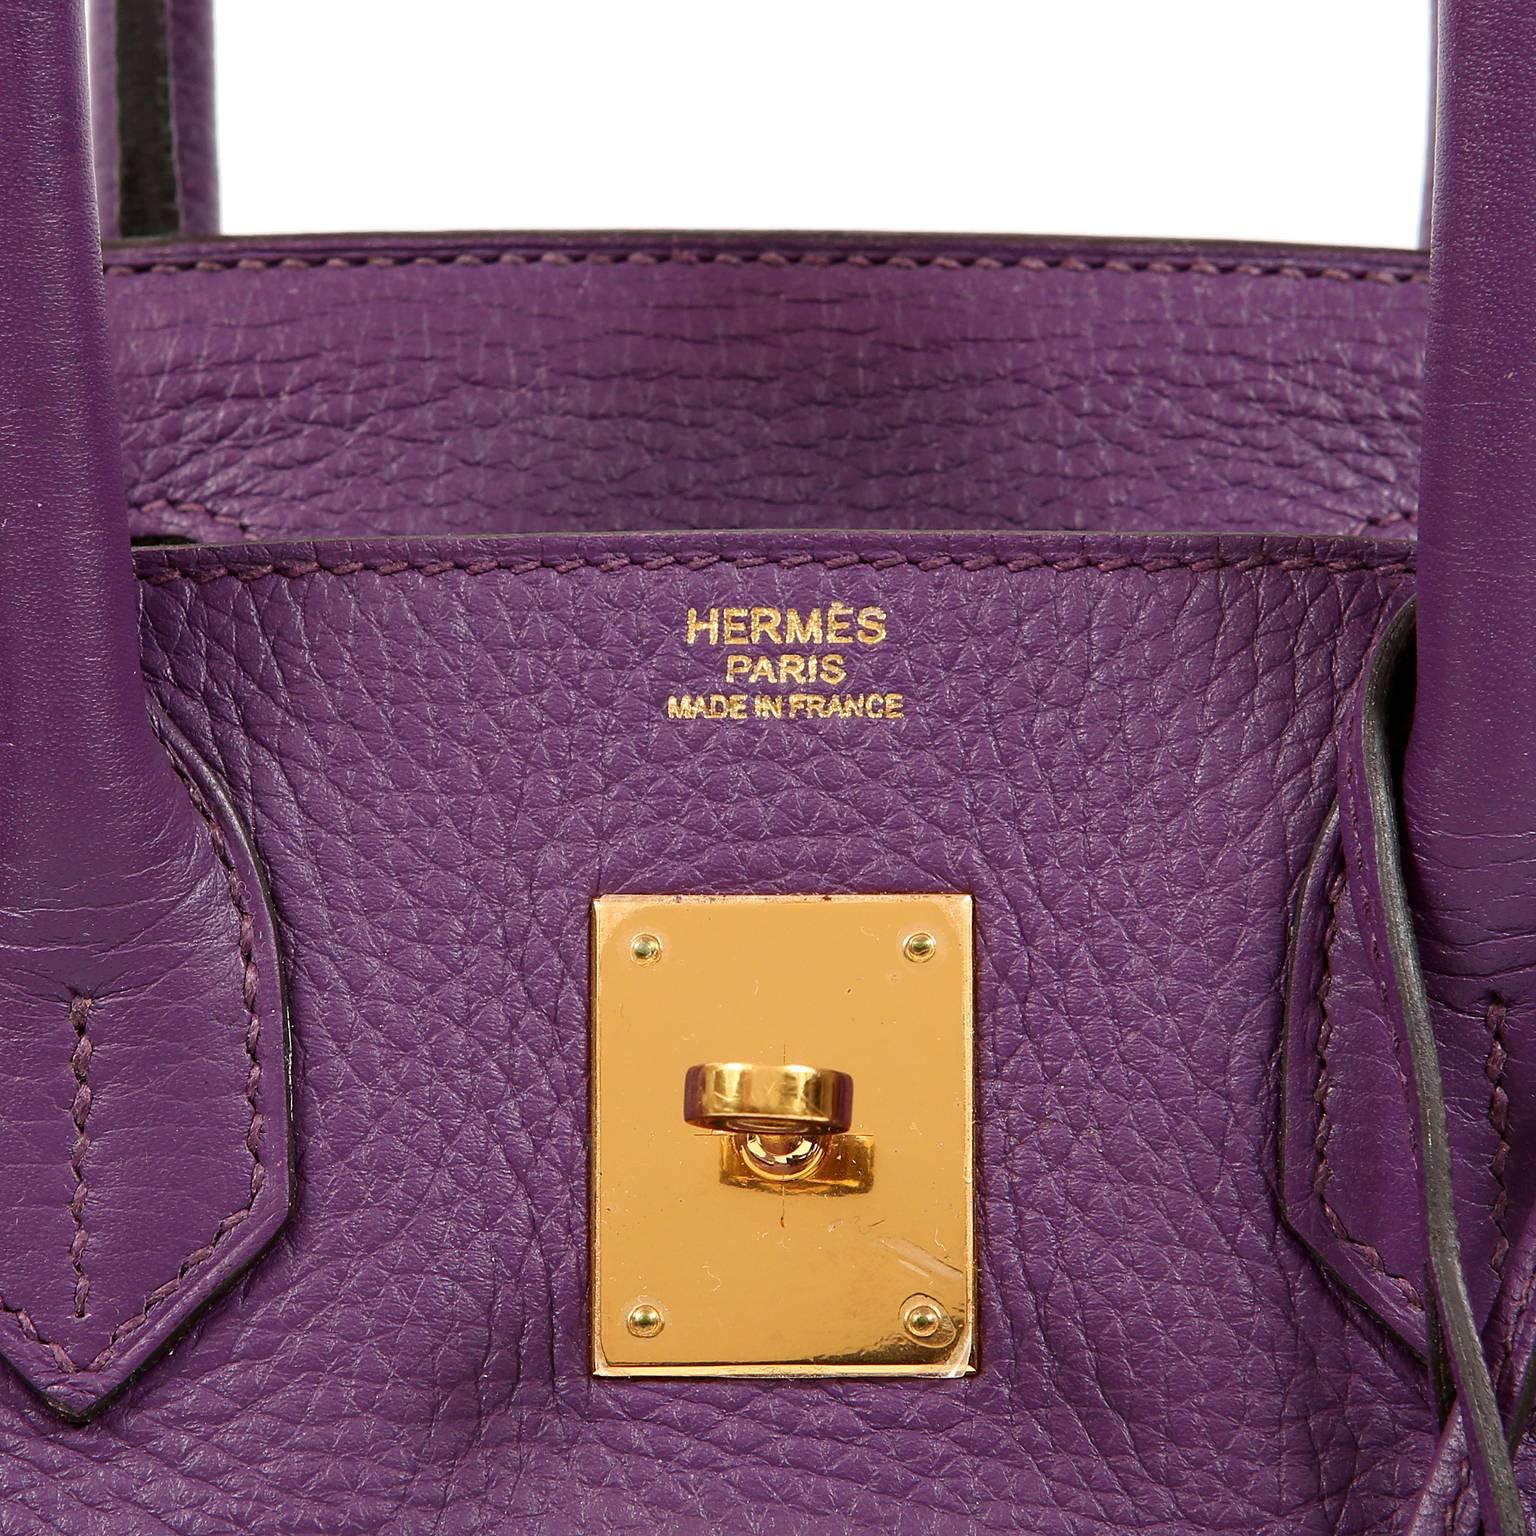 Hermes Ultra Violet Togo 30 cm Birkin Bag with GHW For Sale 2